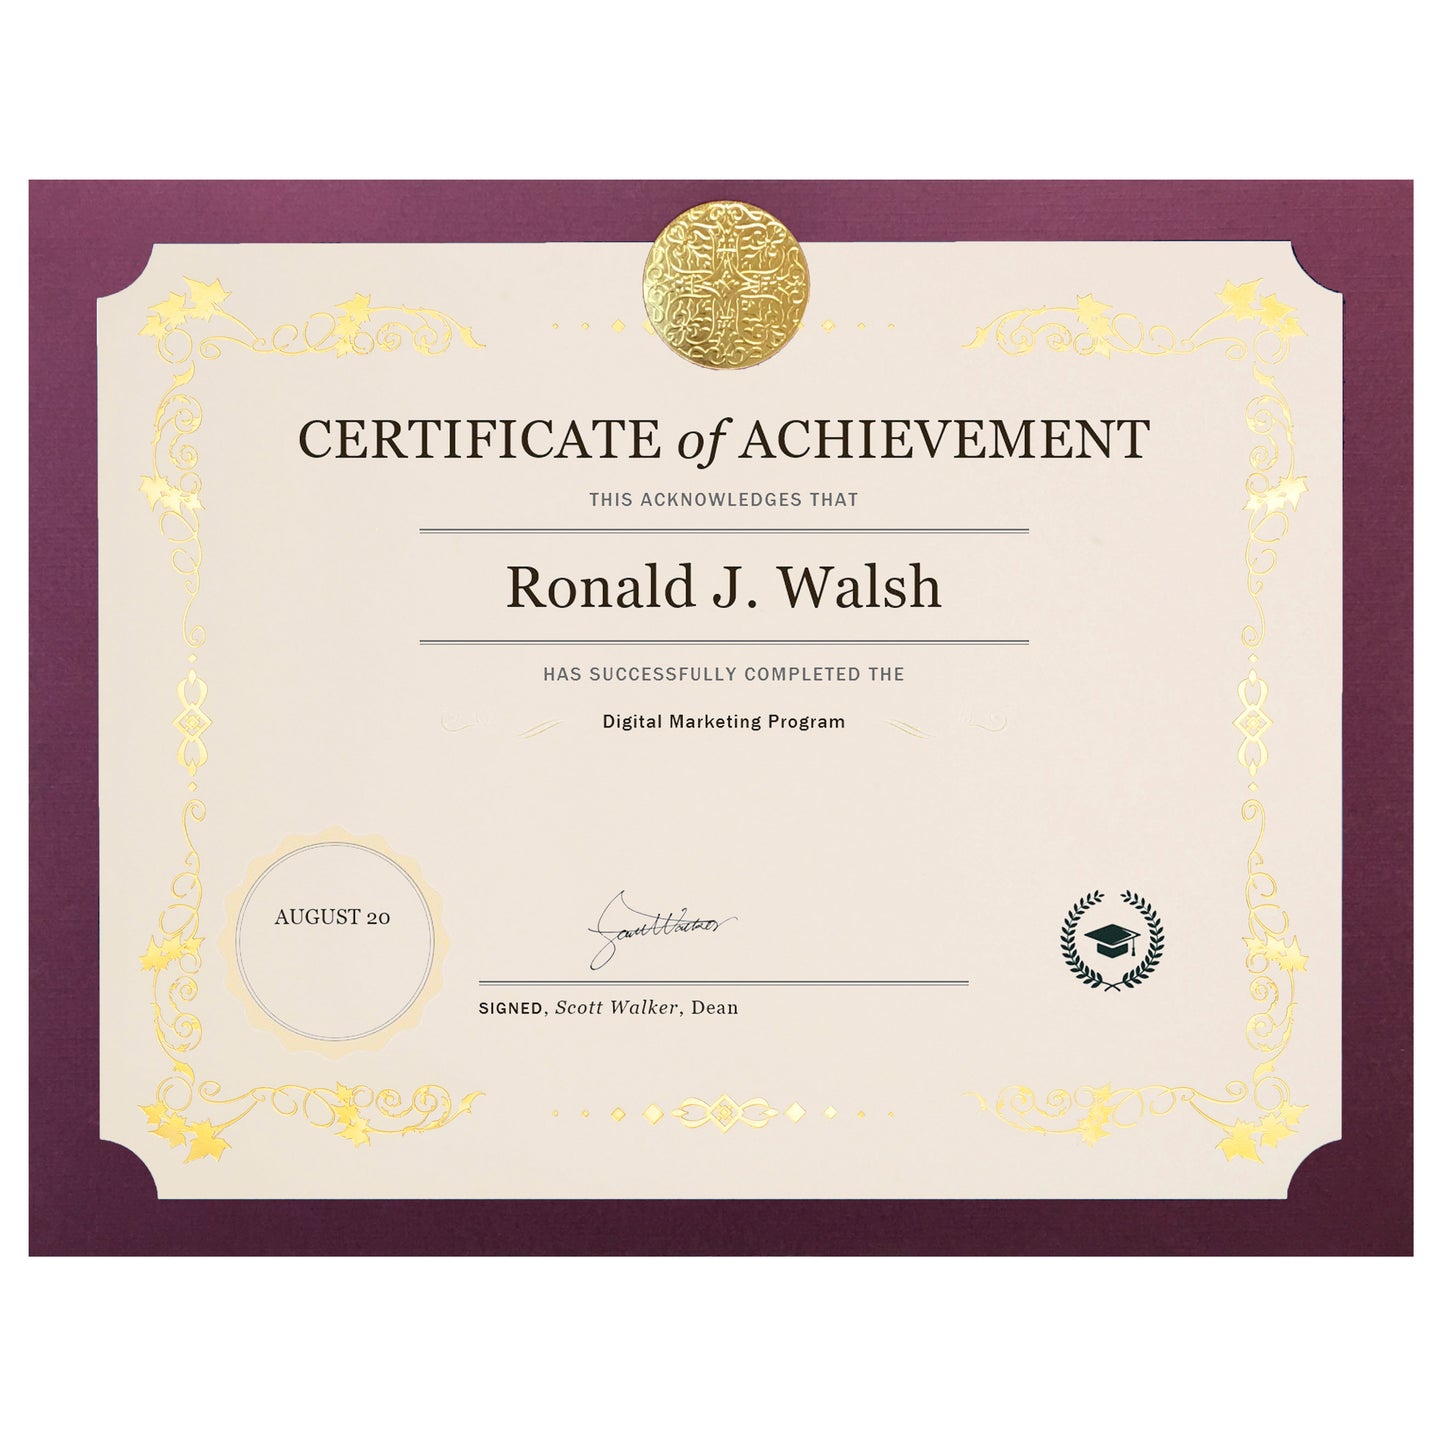 St. James® Elite™ Medallion Presentation Cards/Certificate Holder, Burgundy with Gold Medallion, Pack of 25